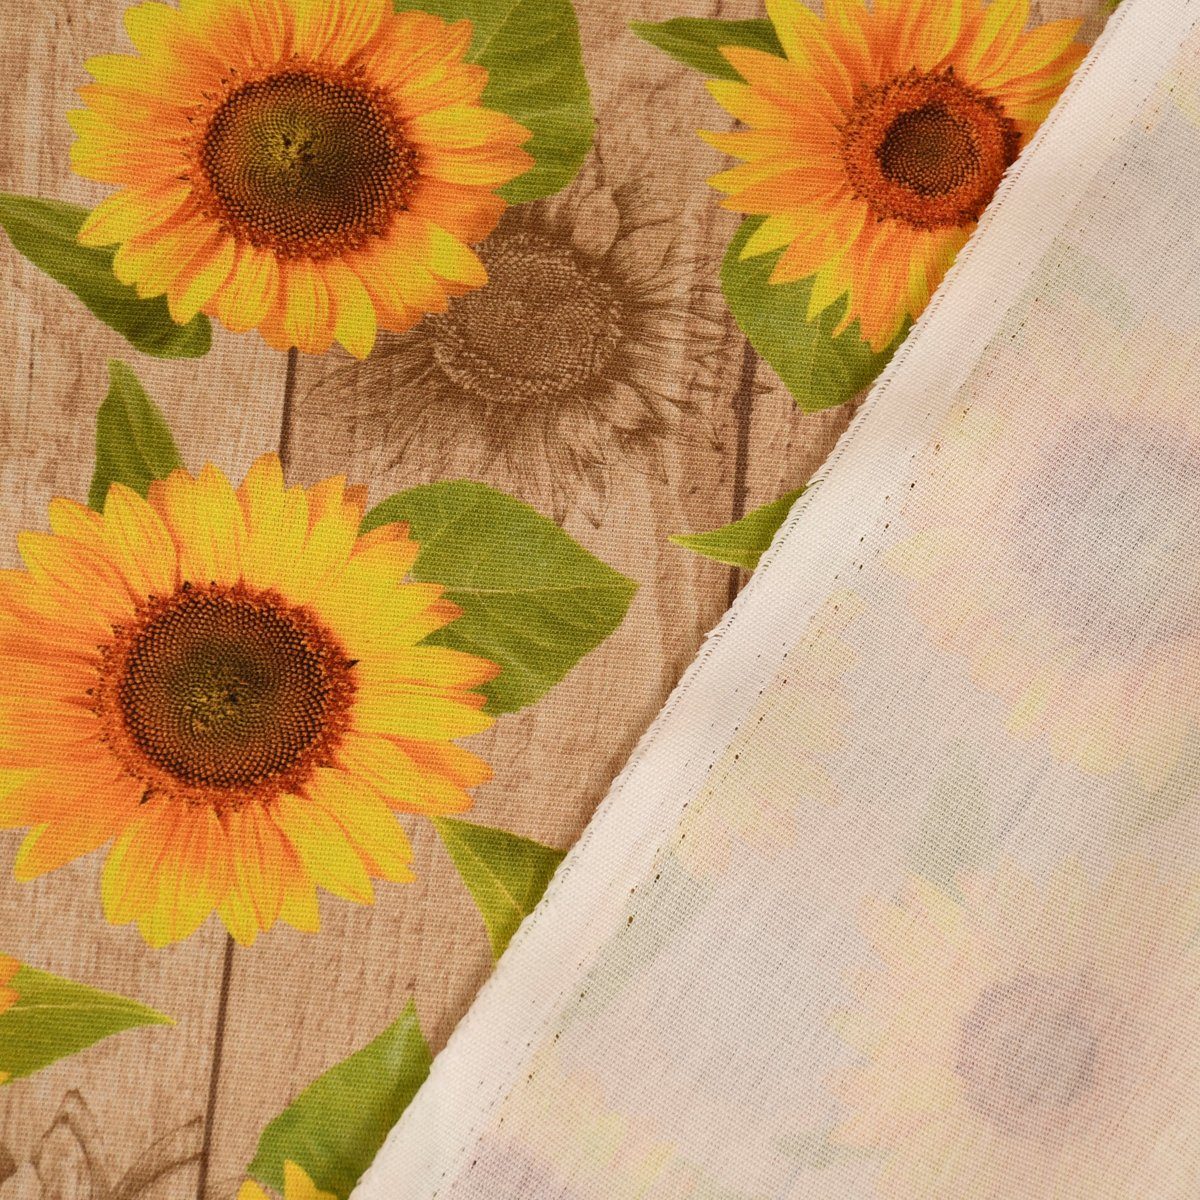 SCHÖNER LEBEN. Dekokissen SCHÖNER Sonnenblumen Holzlatten LEBEN. Outdoor Kissenhülle Sunflower